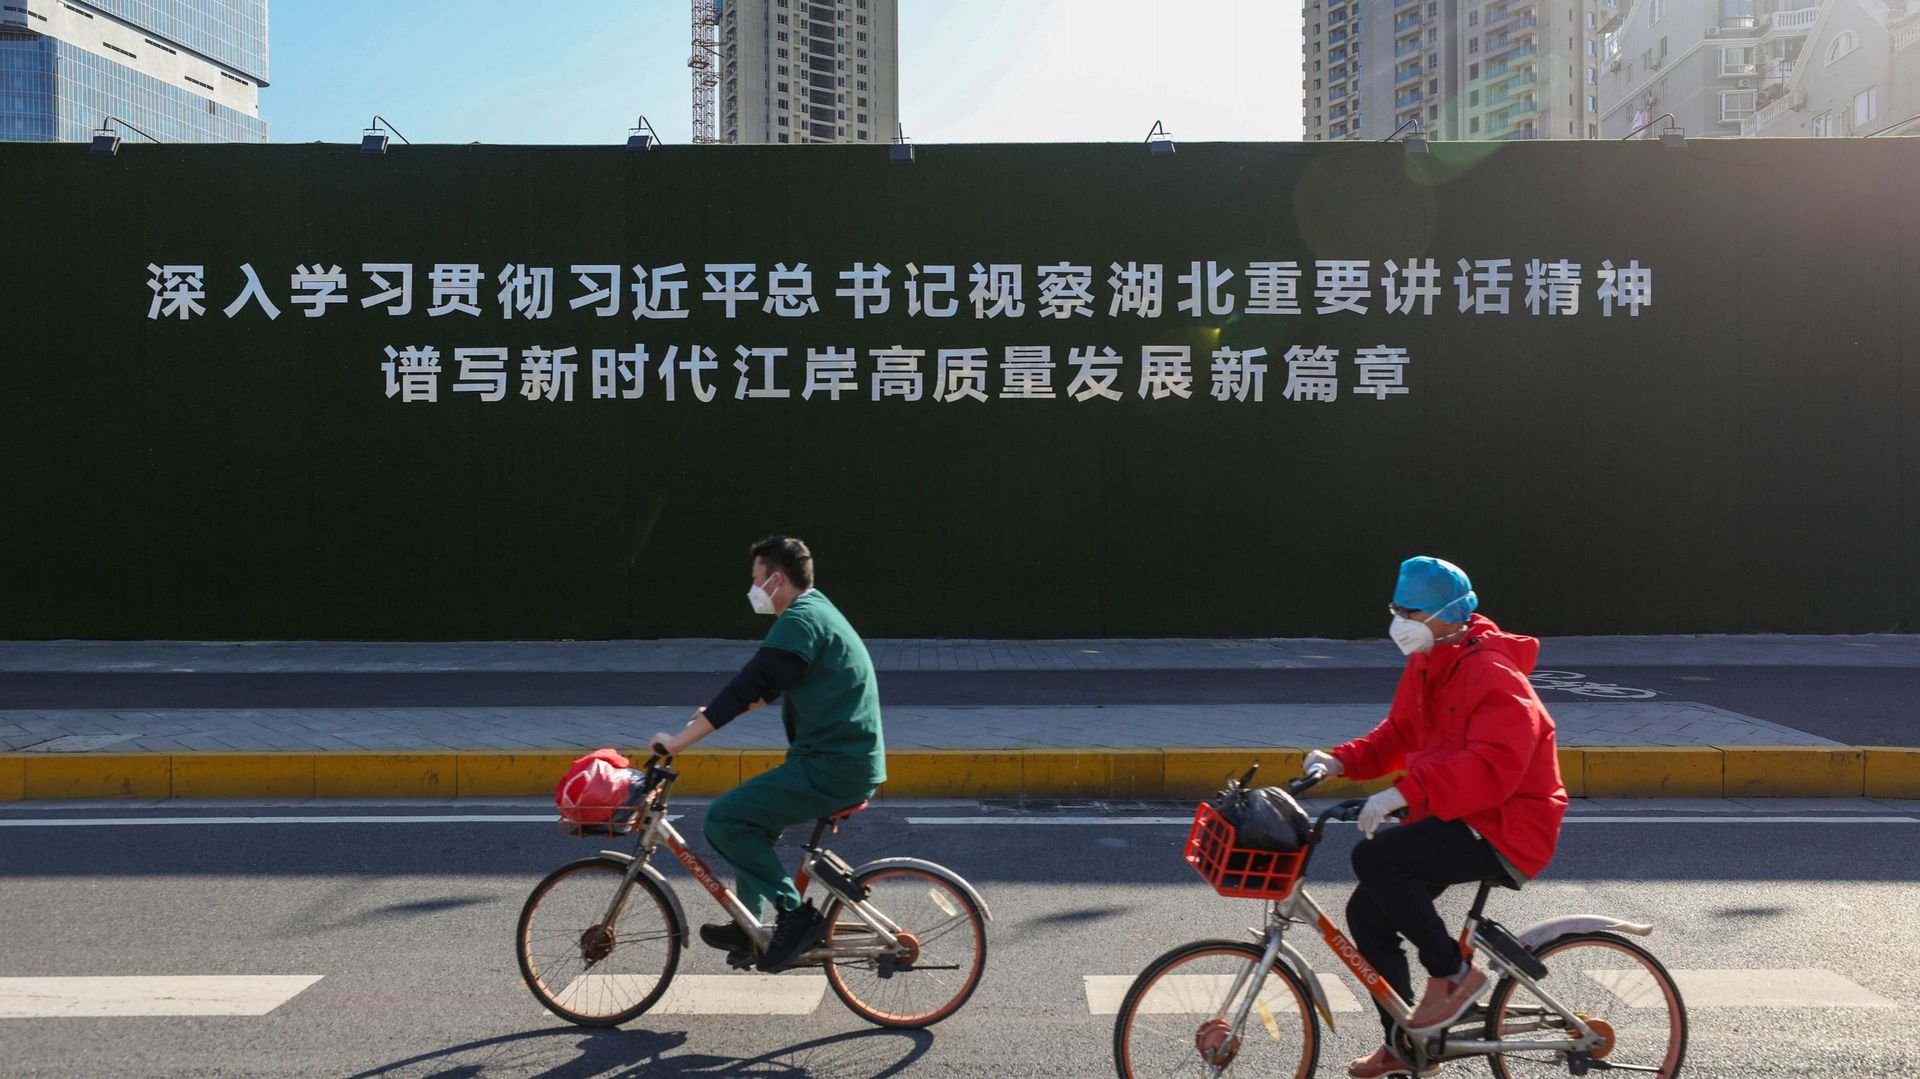 Un slogan de propagande sur le président chinois Xi Jinping à Wuhan en Chine : "Étudiez l’esprit du discours important du secrétaire Xi Jinping lors de son inspection à Hubei, écrivez un nouveau chapitre du développement de haute qualité du district de Ji